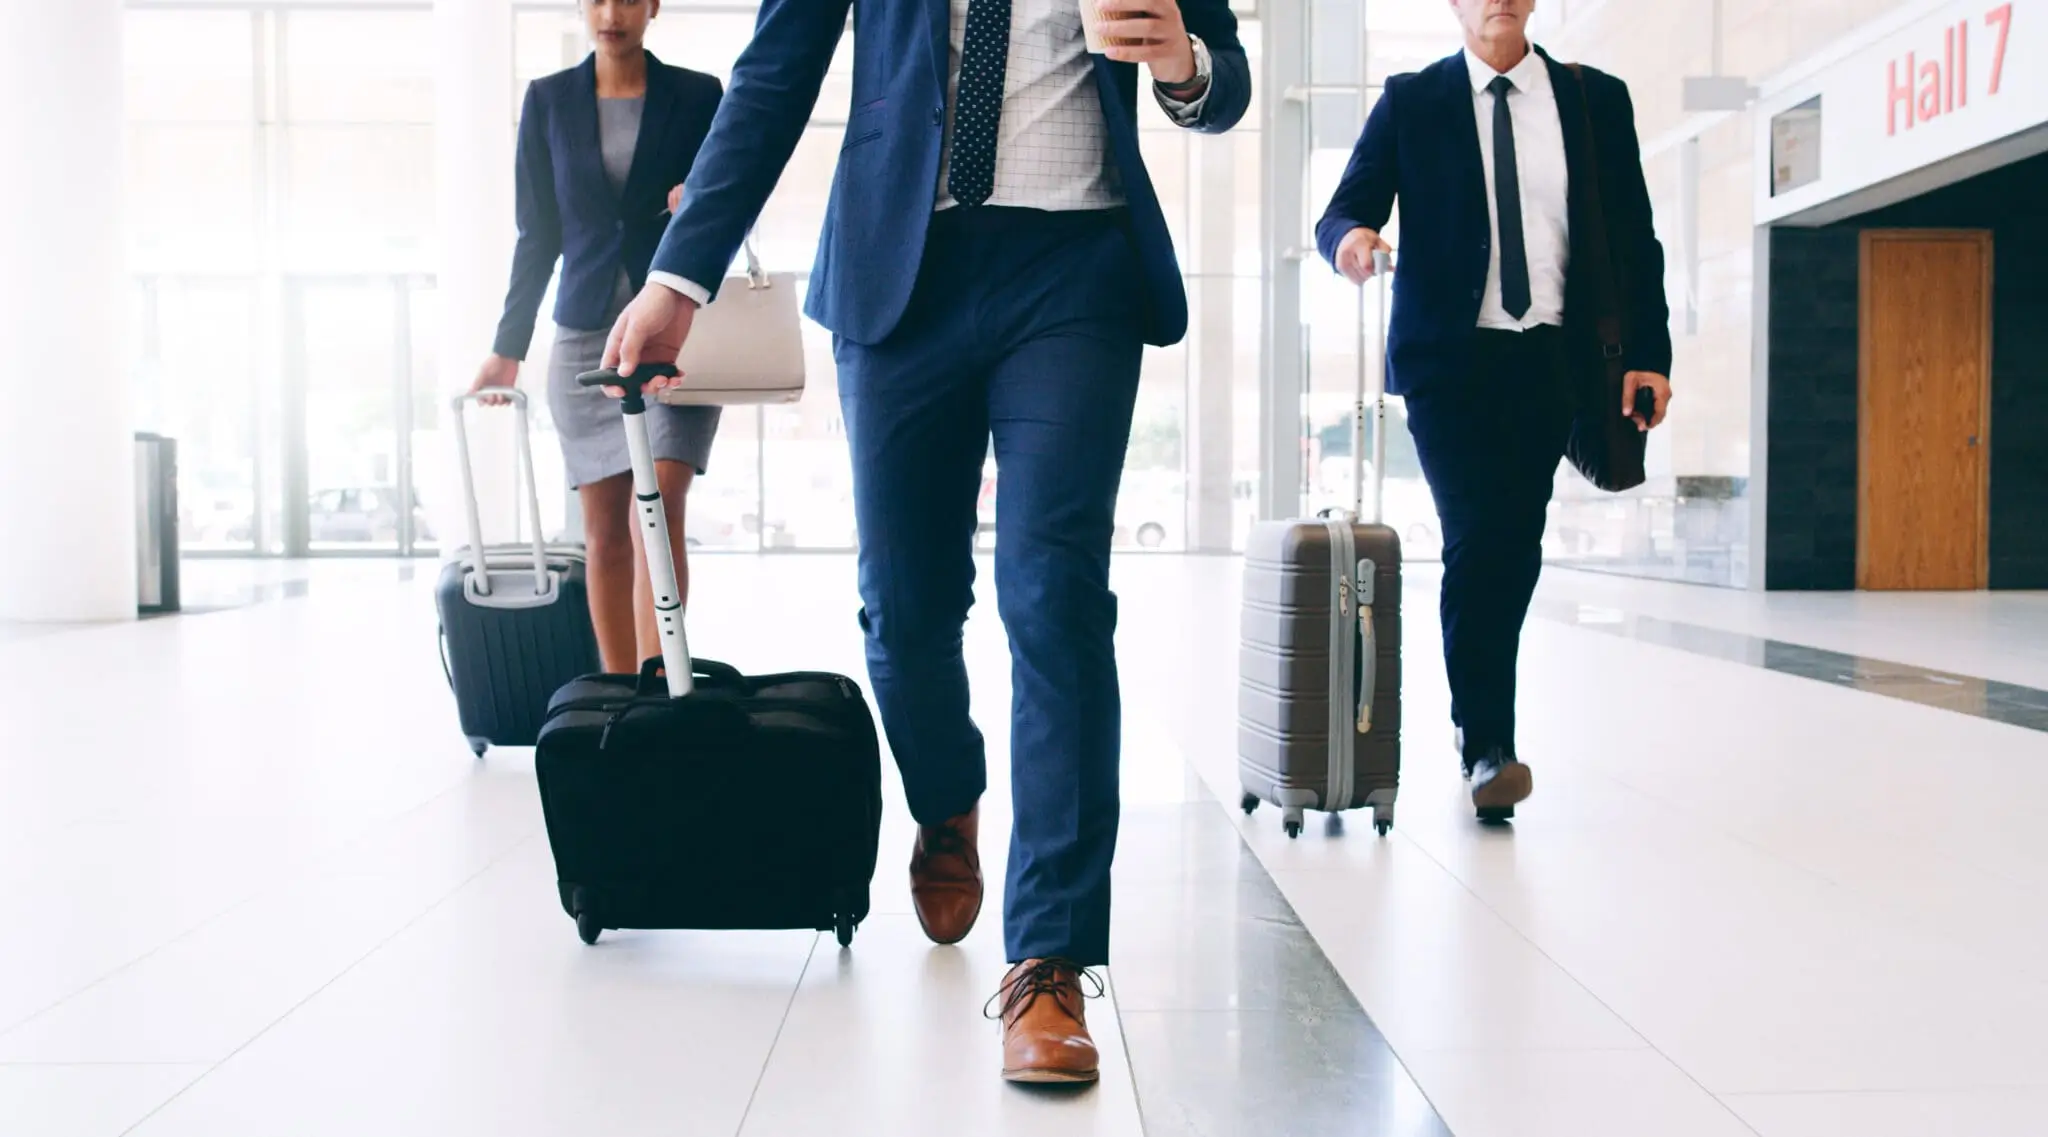 Tres empresarios recorriendo el aeropuerto con sus maletas